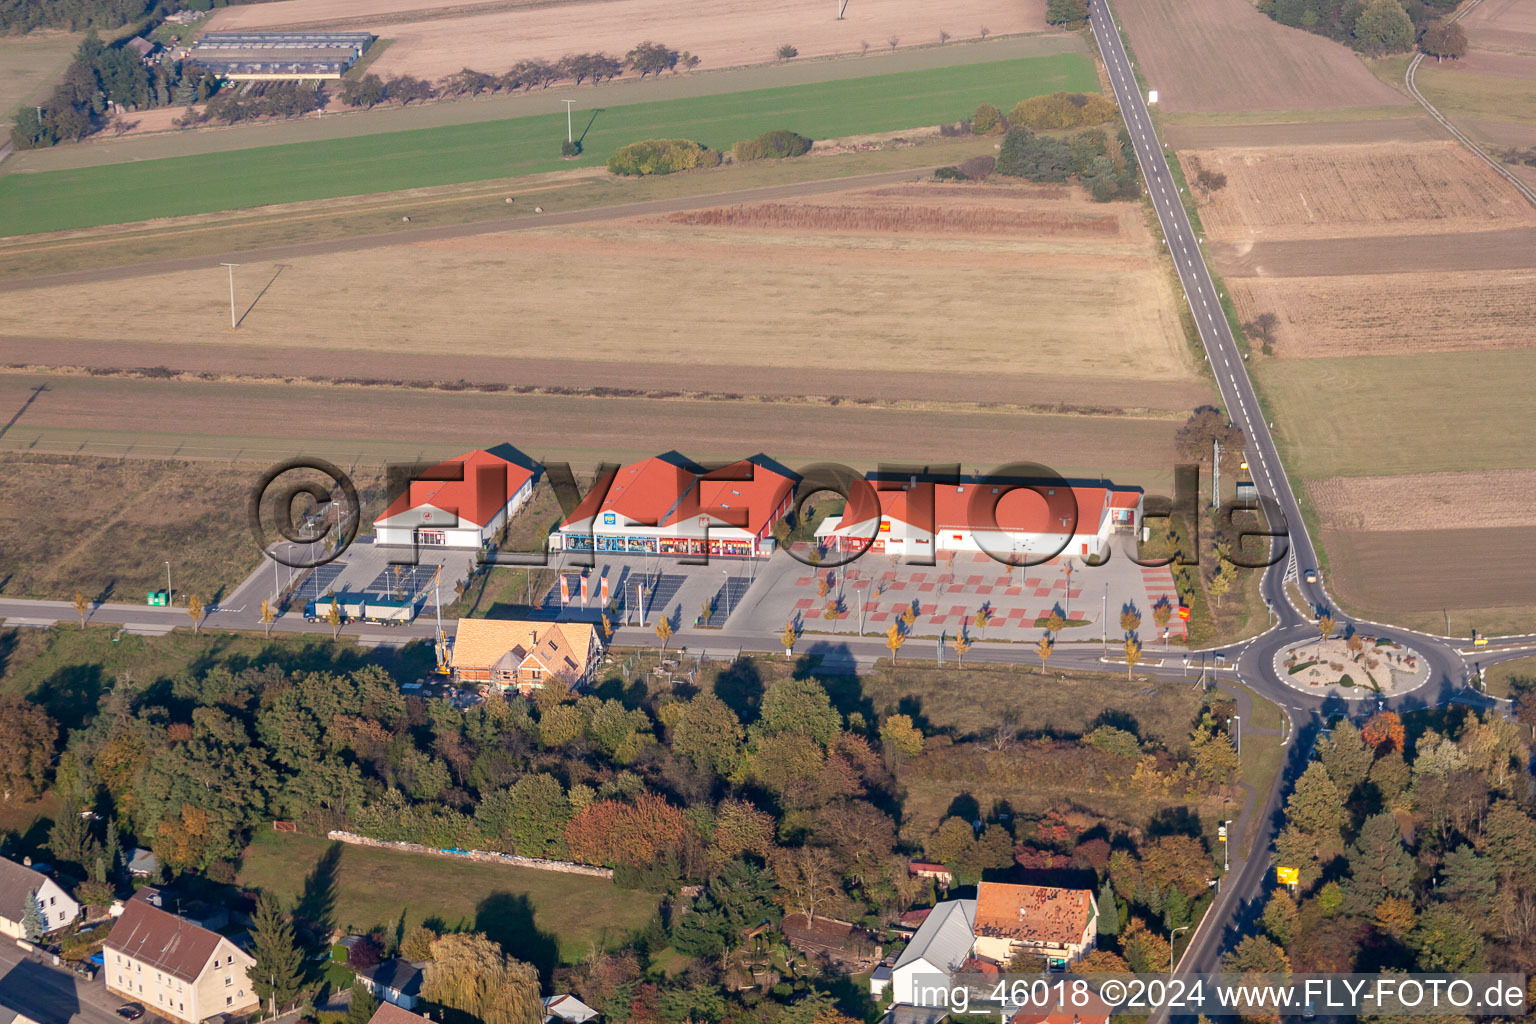 Vue aérienne de Quartier Neulauterburg in Berg dans le département Rhénanie-Palatinat, Allemagne